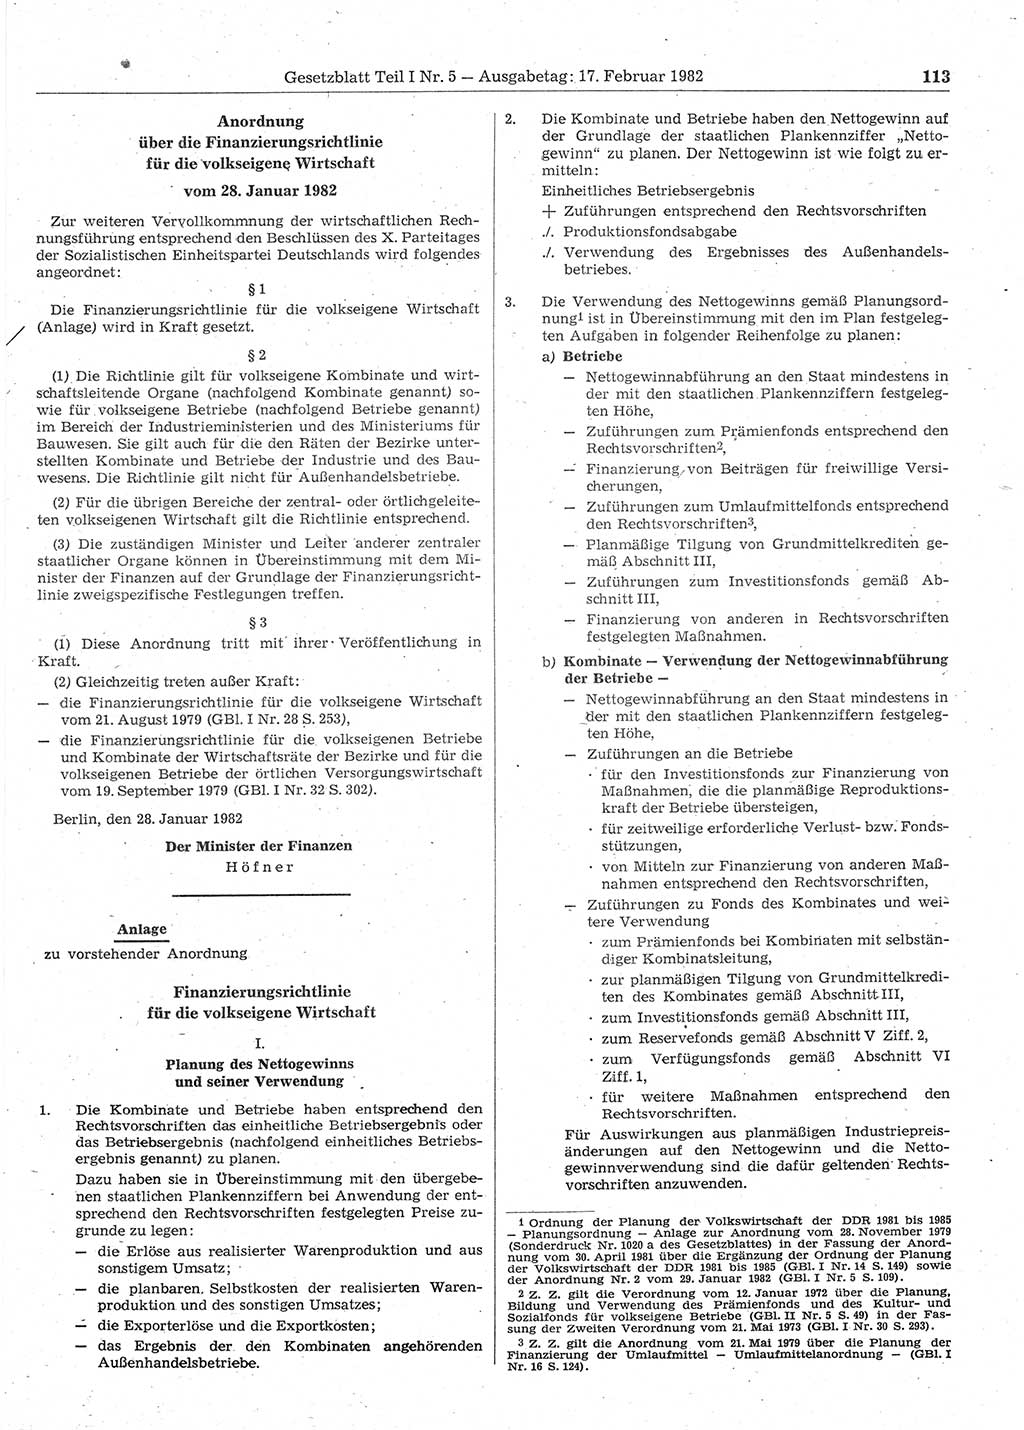 Gesetzblatt (GBl.) der Deutschen Demokratischen Republik (DDR) Teil Ⅰ 1982, Seite 113 (GBl. DDR Ⅰ 1982, S. 113)